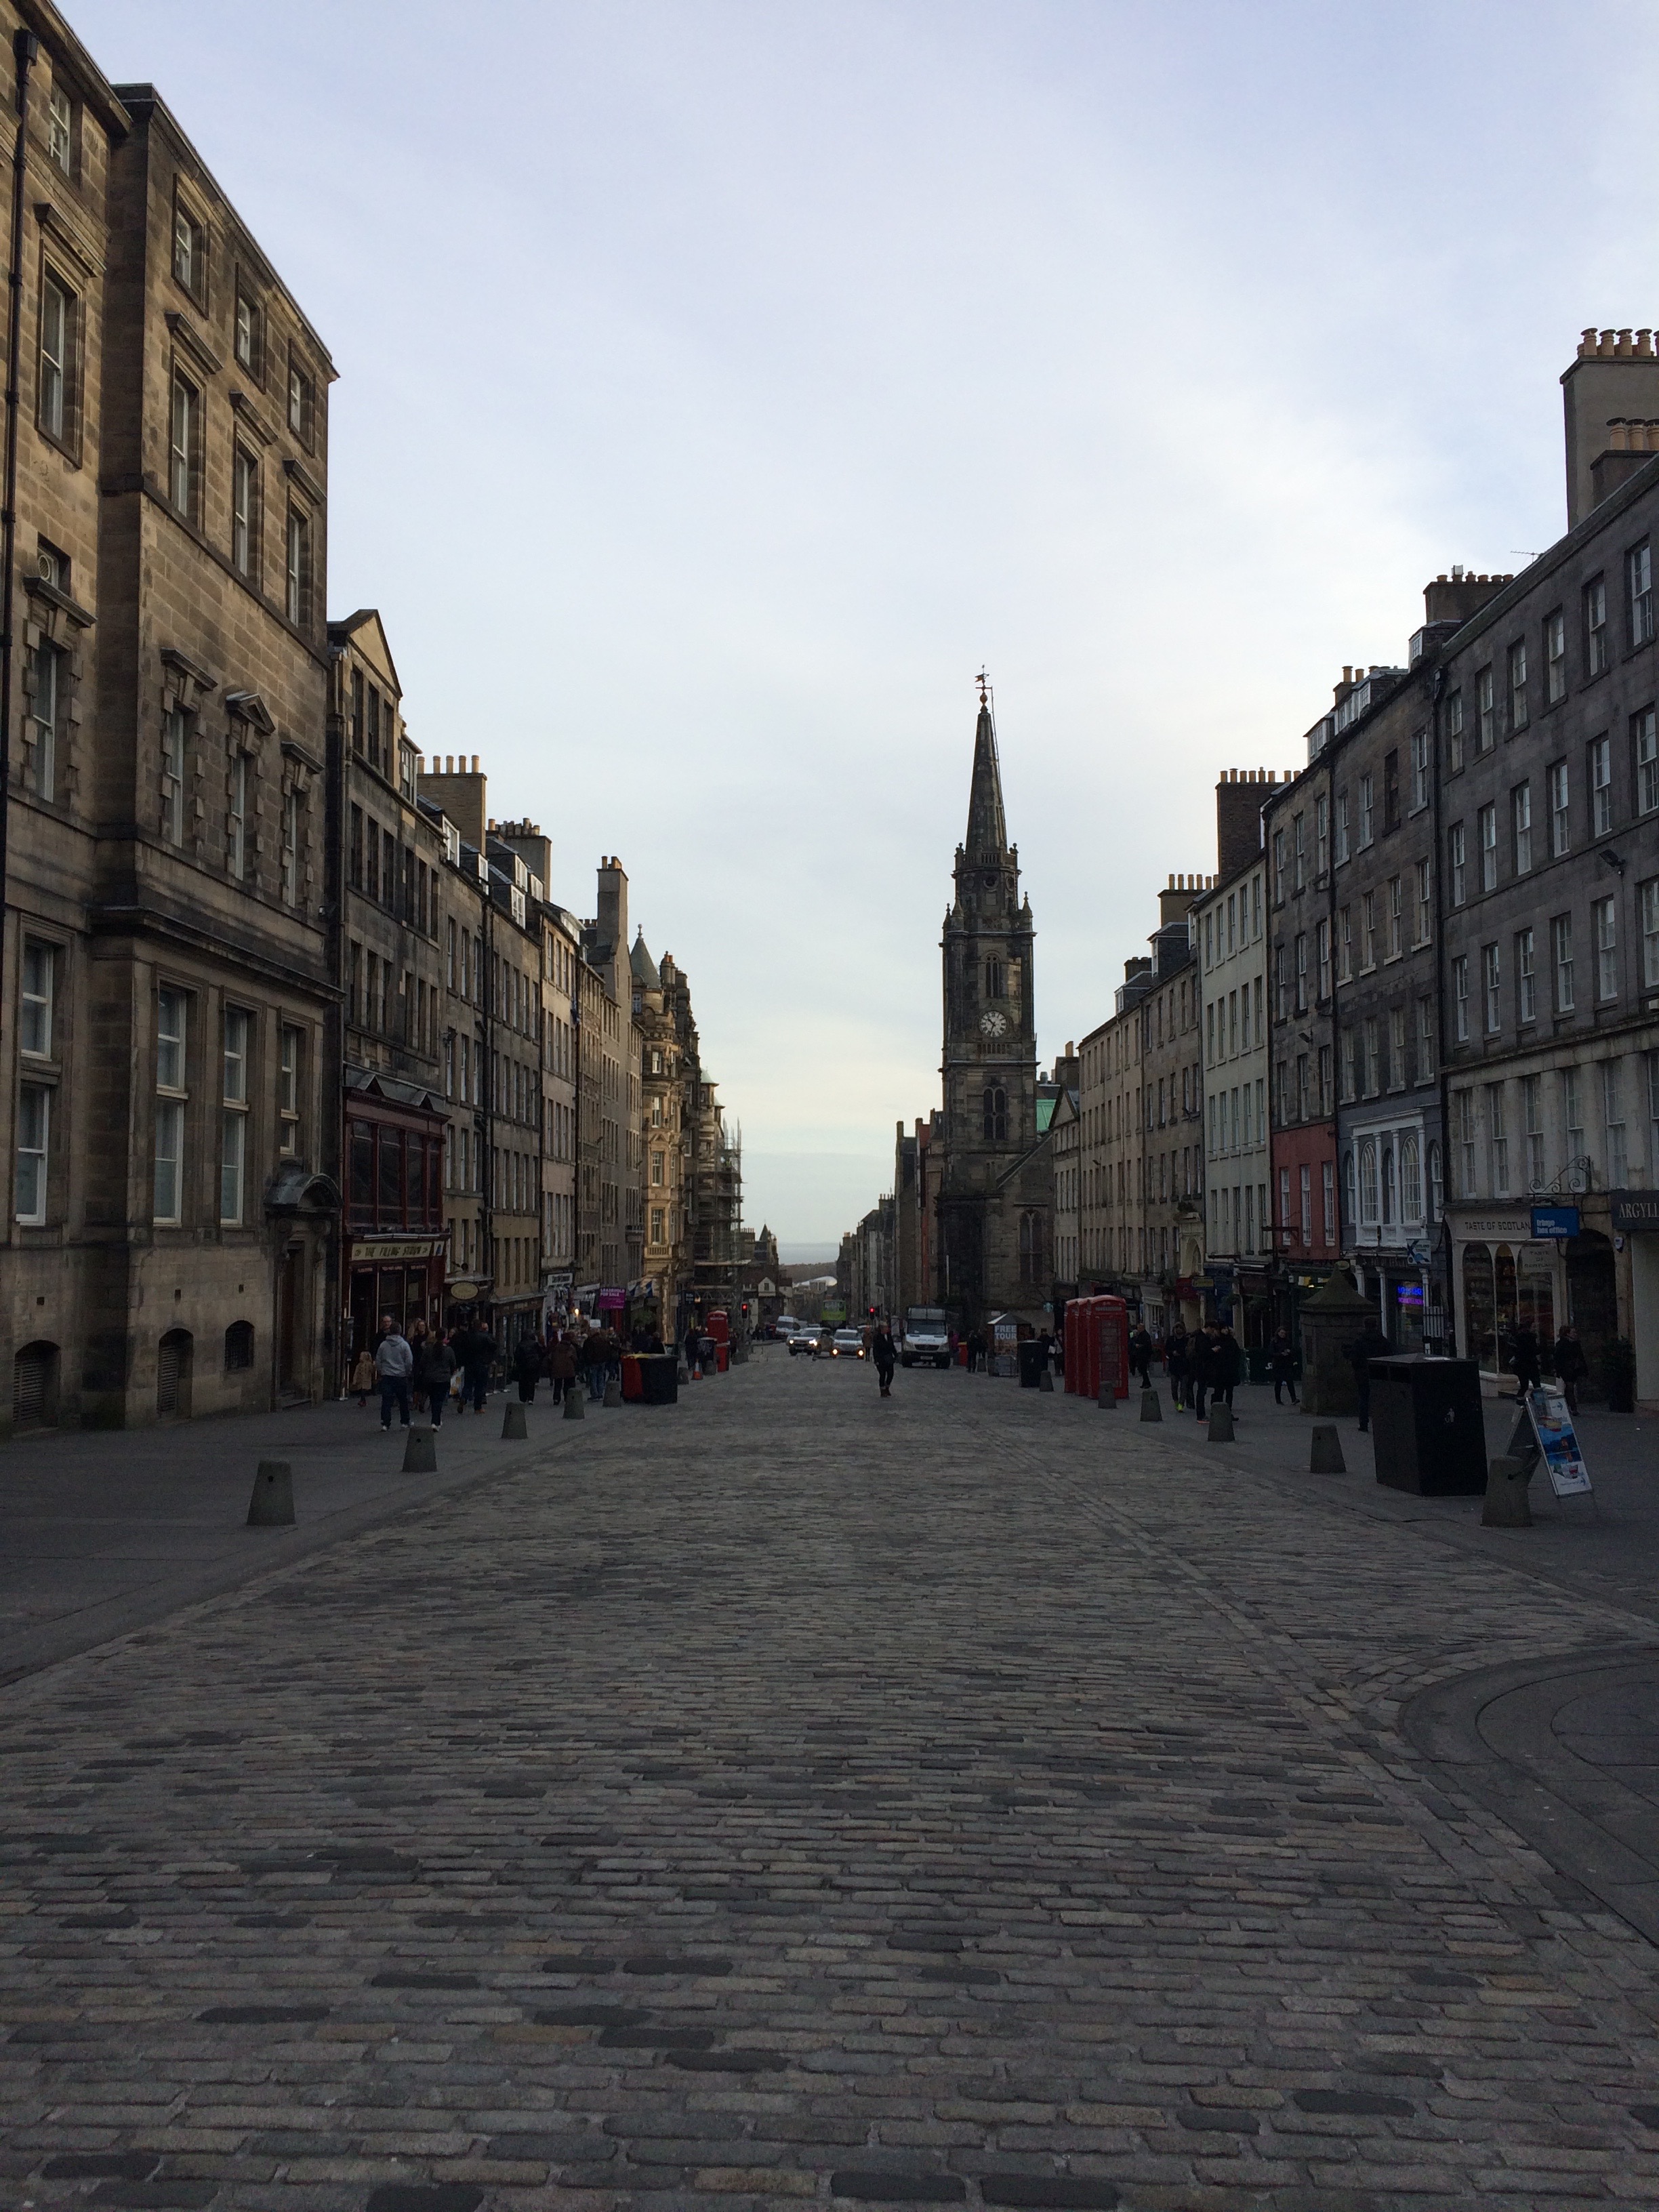 Edinburgh's Royal Mile